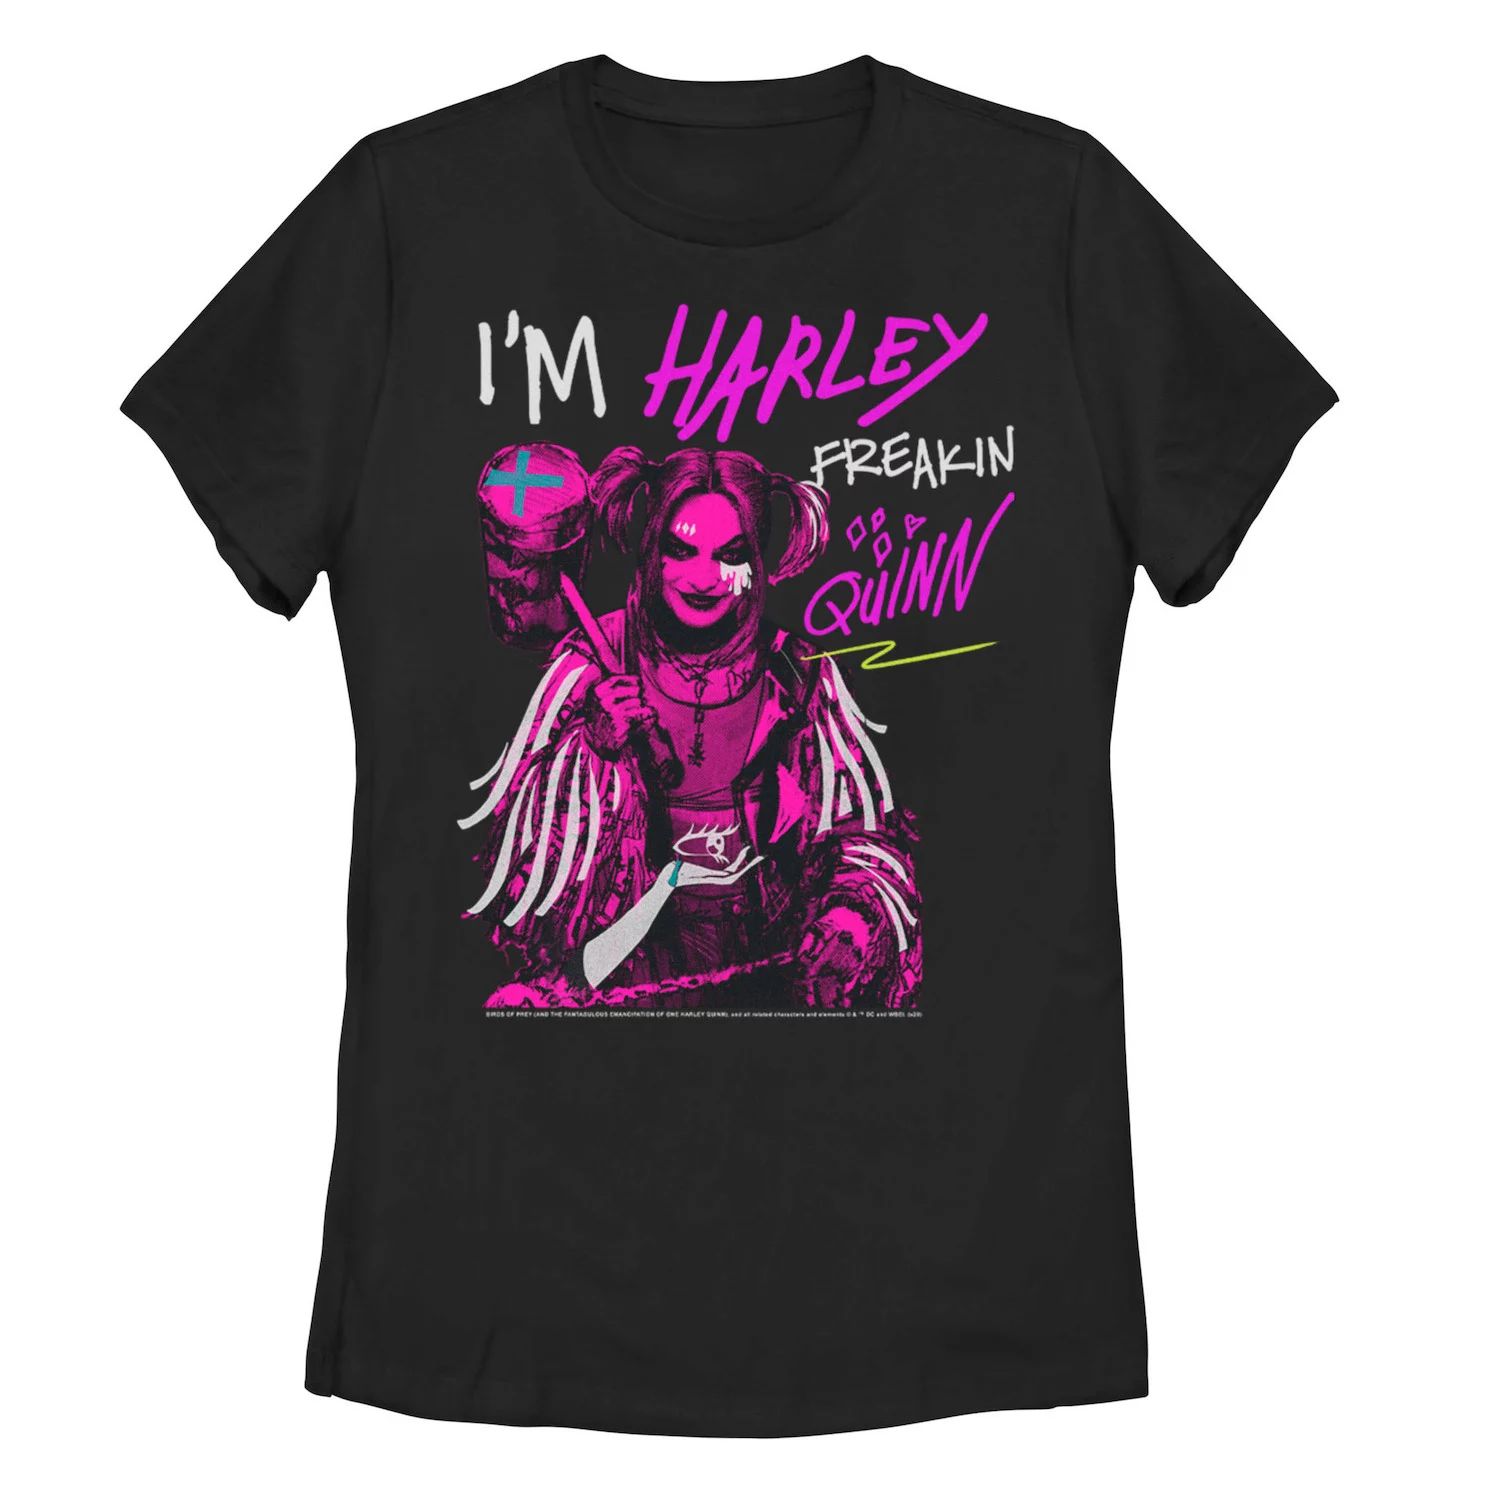 Футболка Harley Quinn: Birds Of Prey для юниоров с надписью «Я Harley Freakin' Quinn» Licensed Character фигурка funko pop heroes birds of prey – harley quinn roller derby 9 5 см